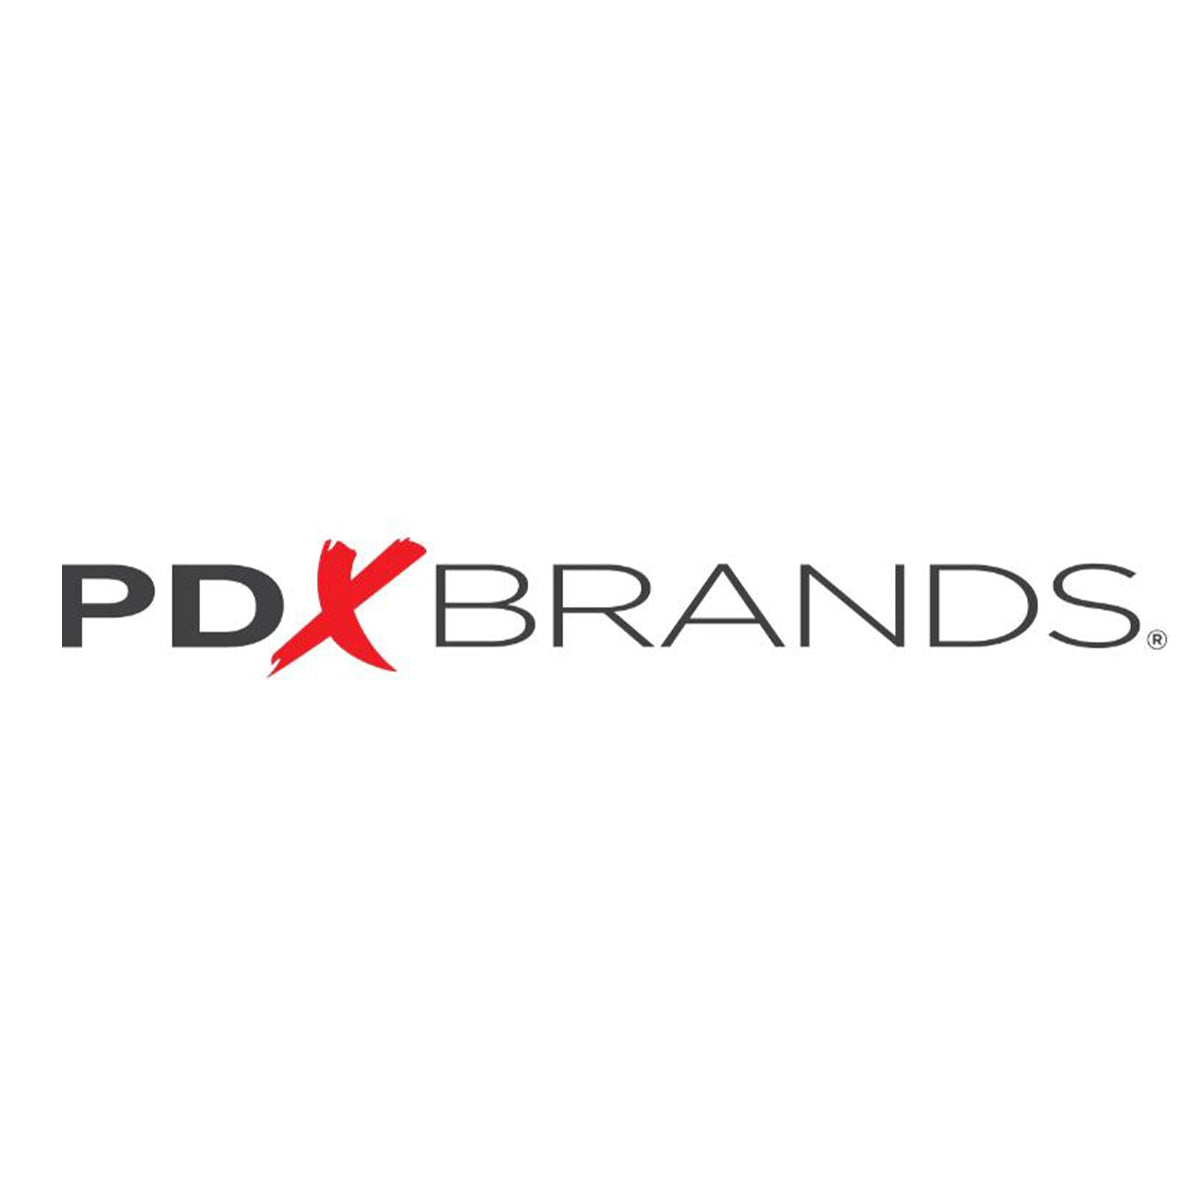 pdx brands logo